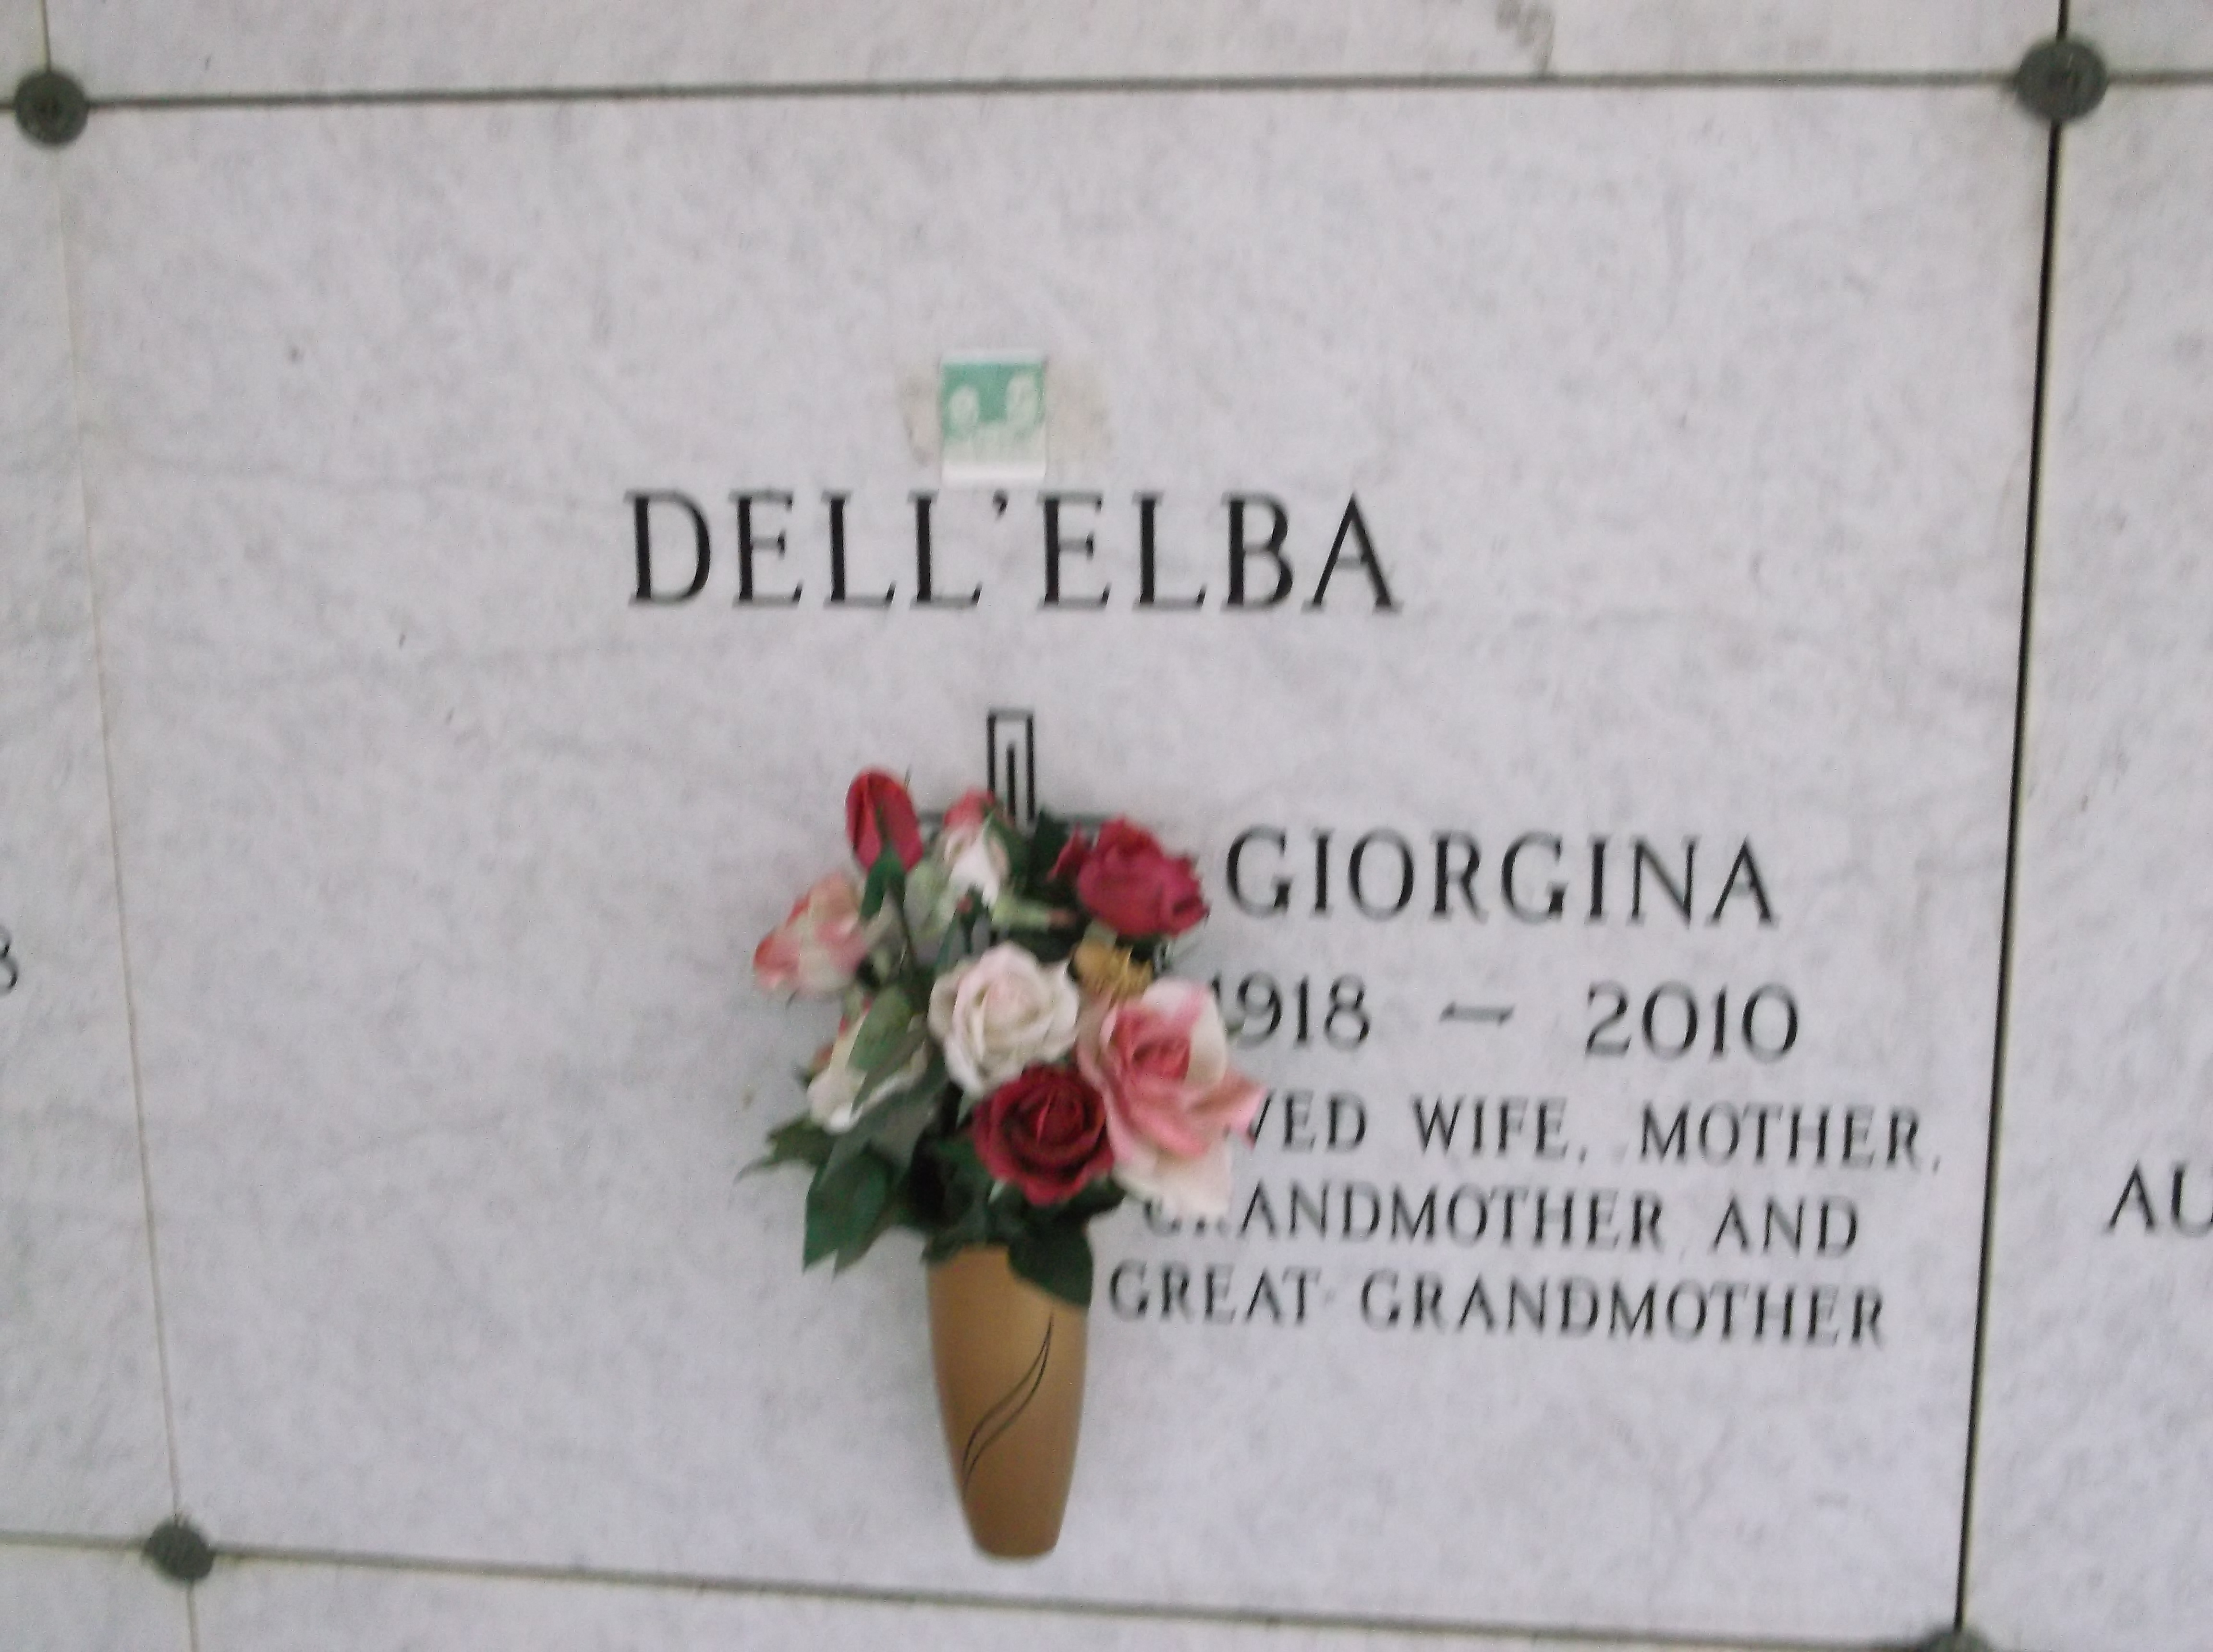 Giorgina Dell'Elba